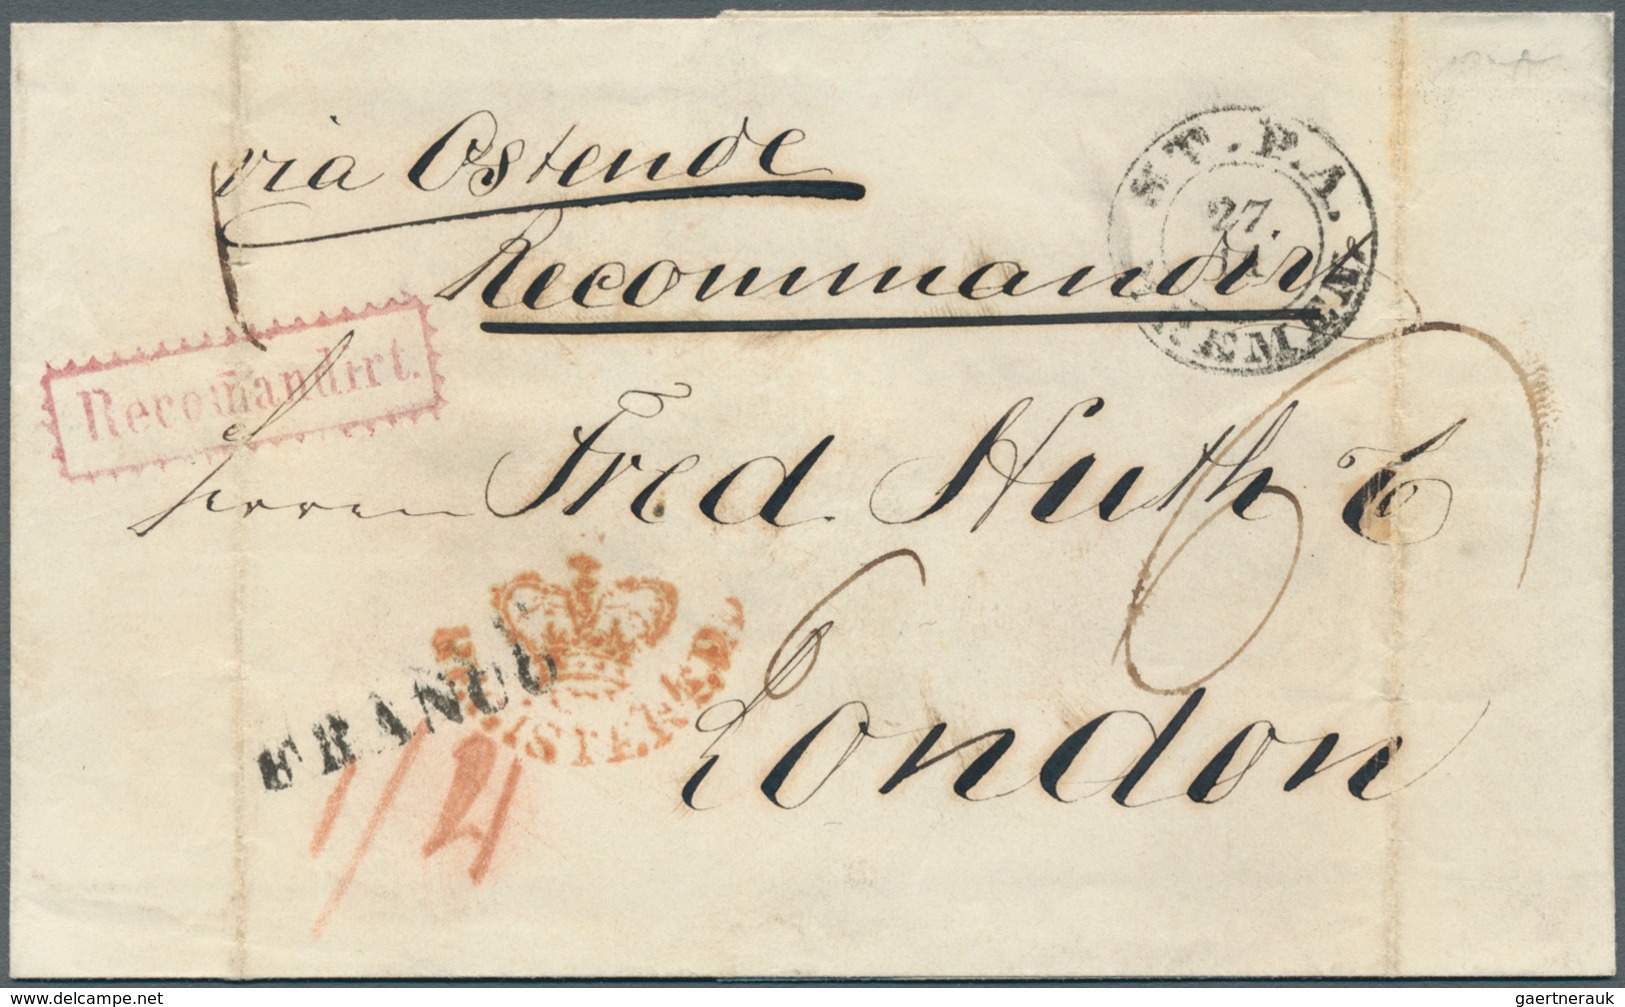 31250 Bremen - Vorphilatelie: 1767/1875, umfangreiche Stempel-Sammlung der verschiedenen Postanstalten in